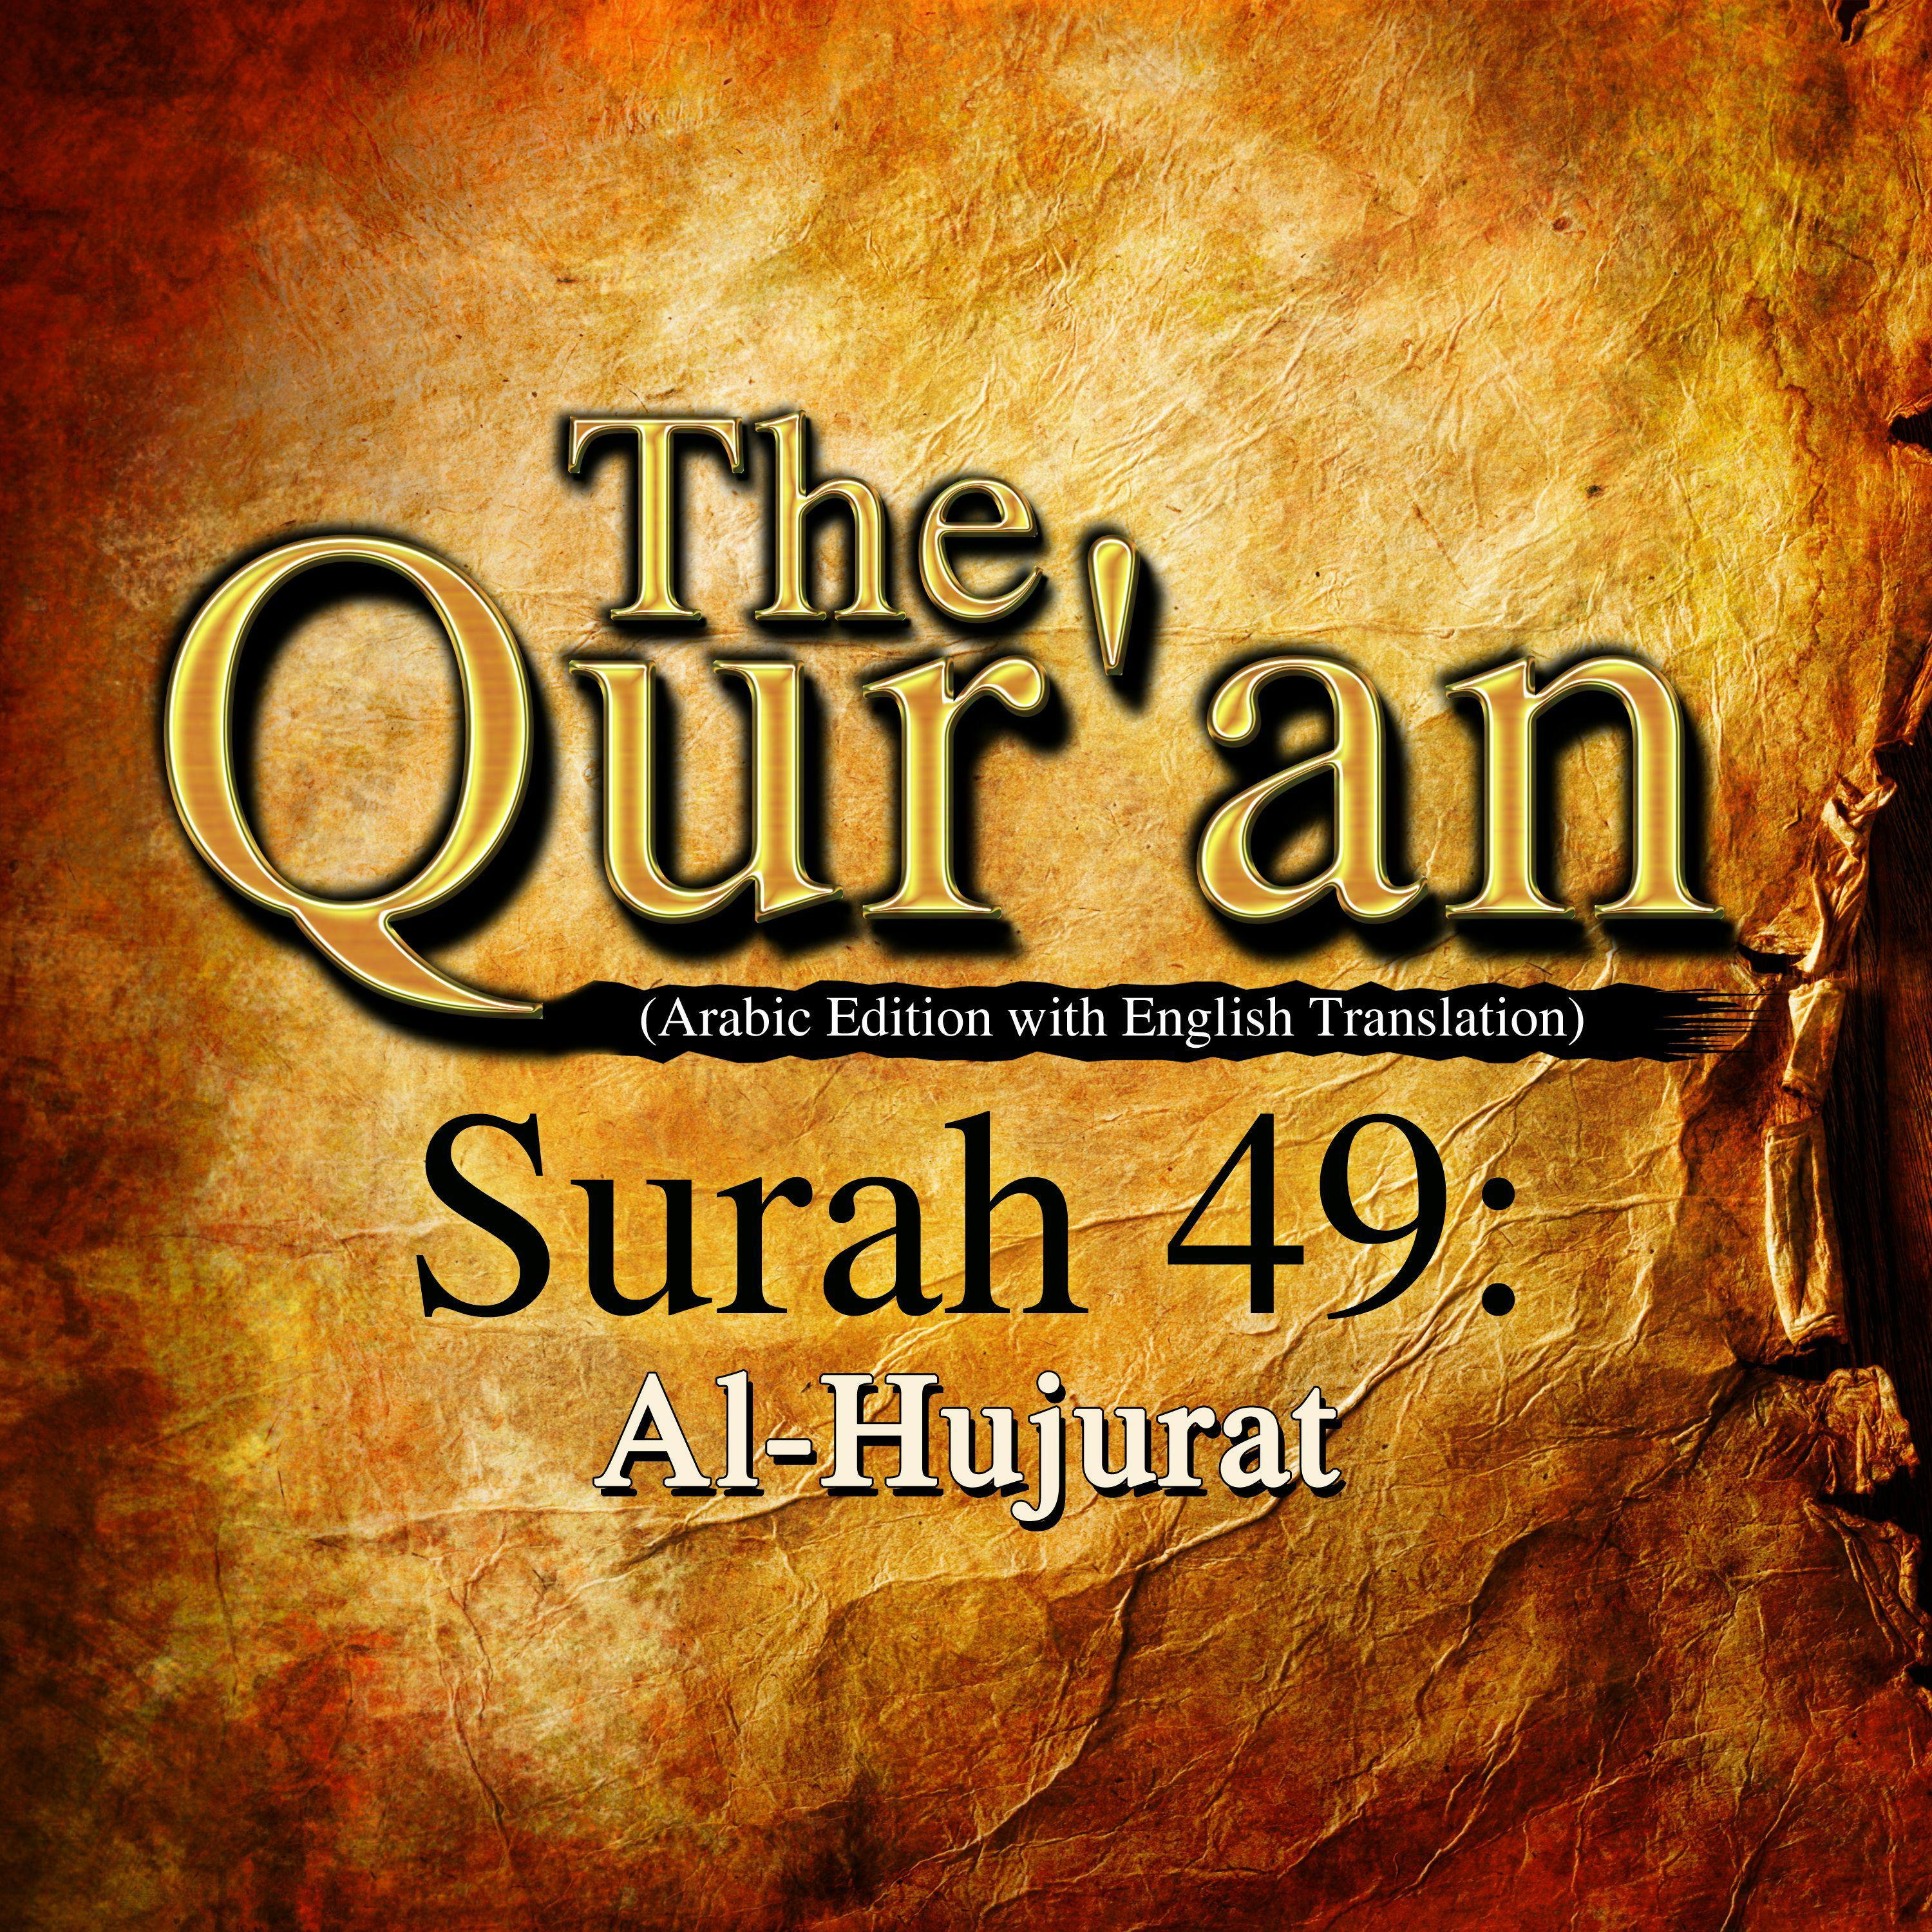 The Qur'an: Surah 49: Al-Hujurat - One Media iP LTD